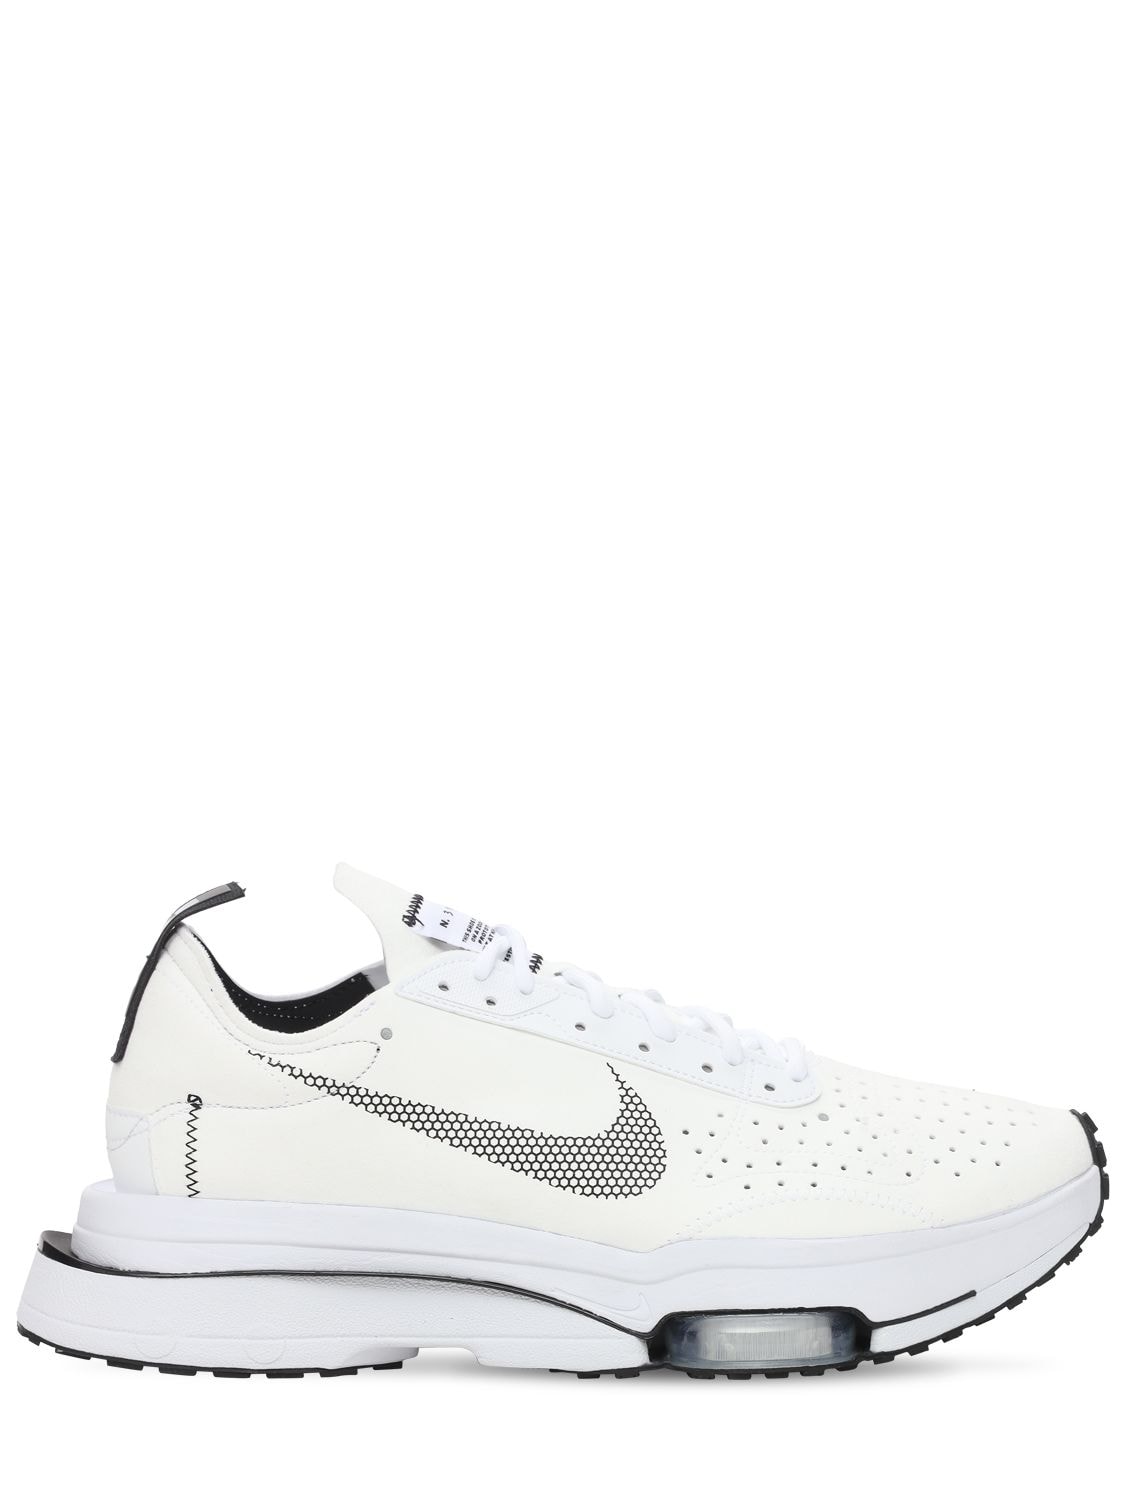 Nike Air Zoom Type Sneakers In White In Multi